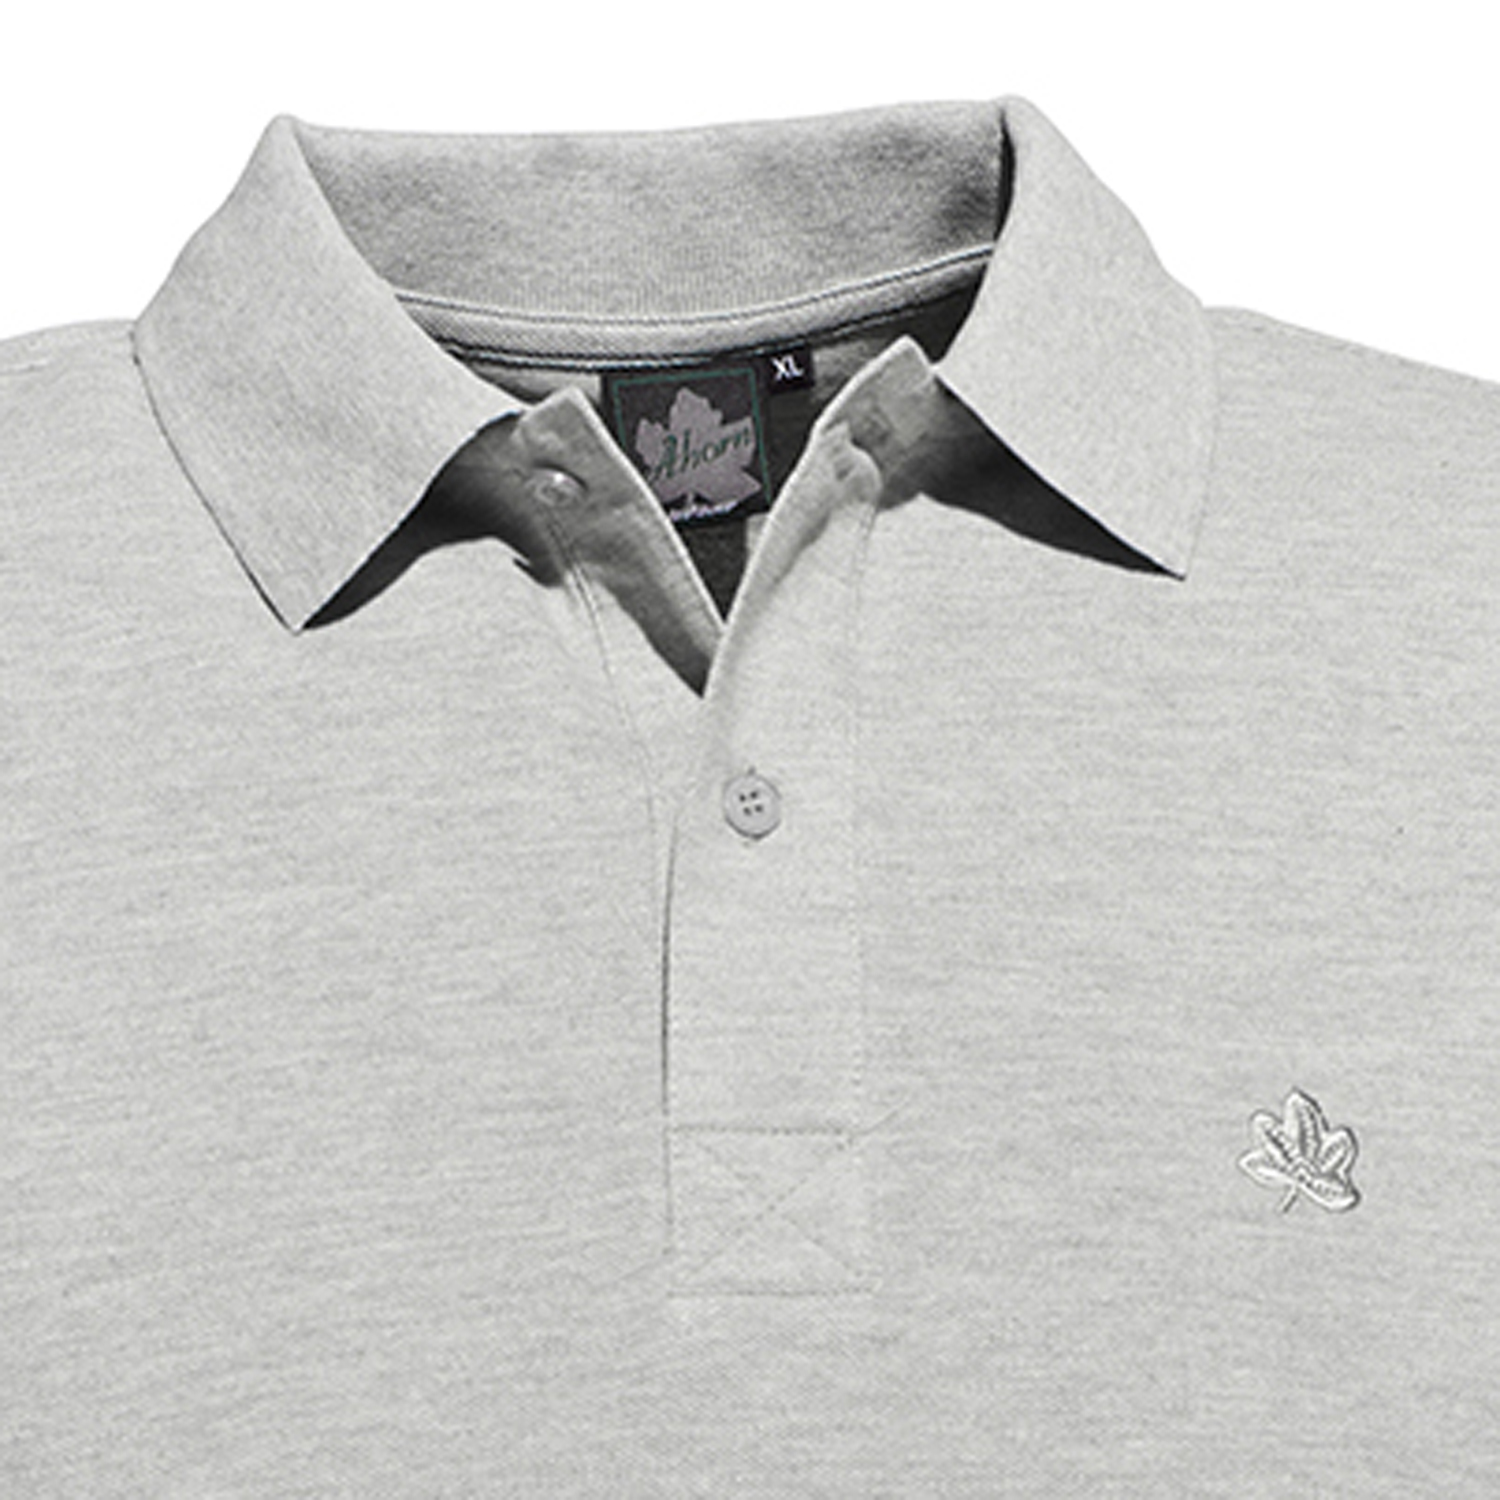 Poloshirt in Piquee Qualität kurzarm graumeliert für Herren von Ahorn Sportswear bis Übergröße 10XL